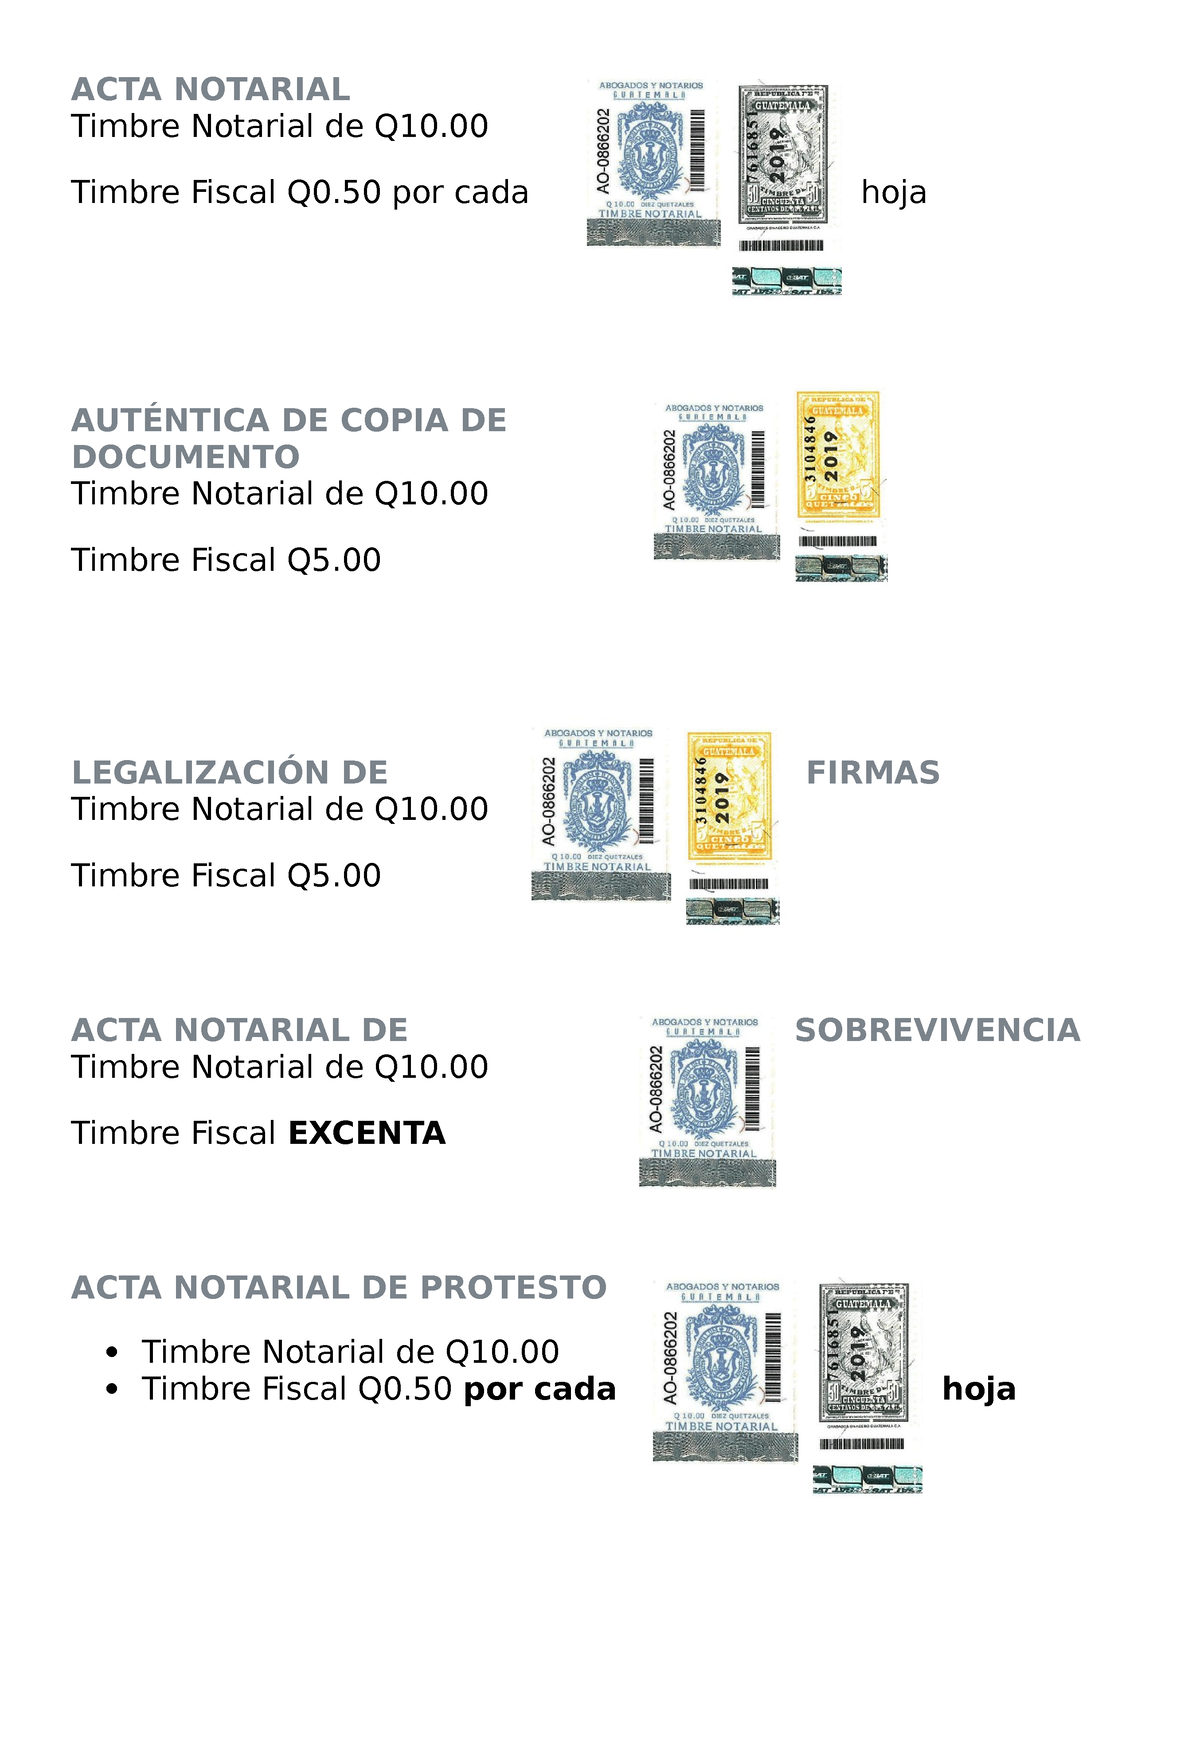 Uso De Los Timbres Notariales Y Fiscales Acta Notarial Timbre